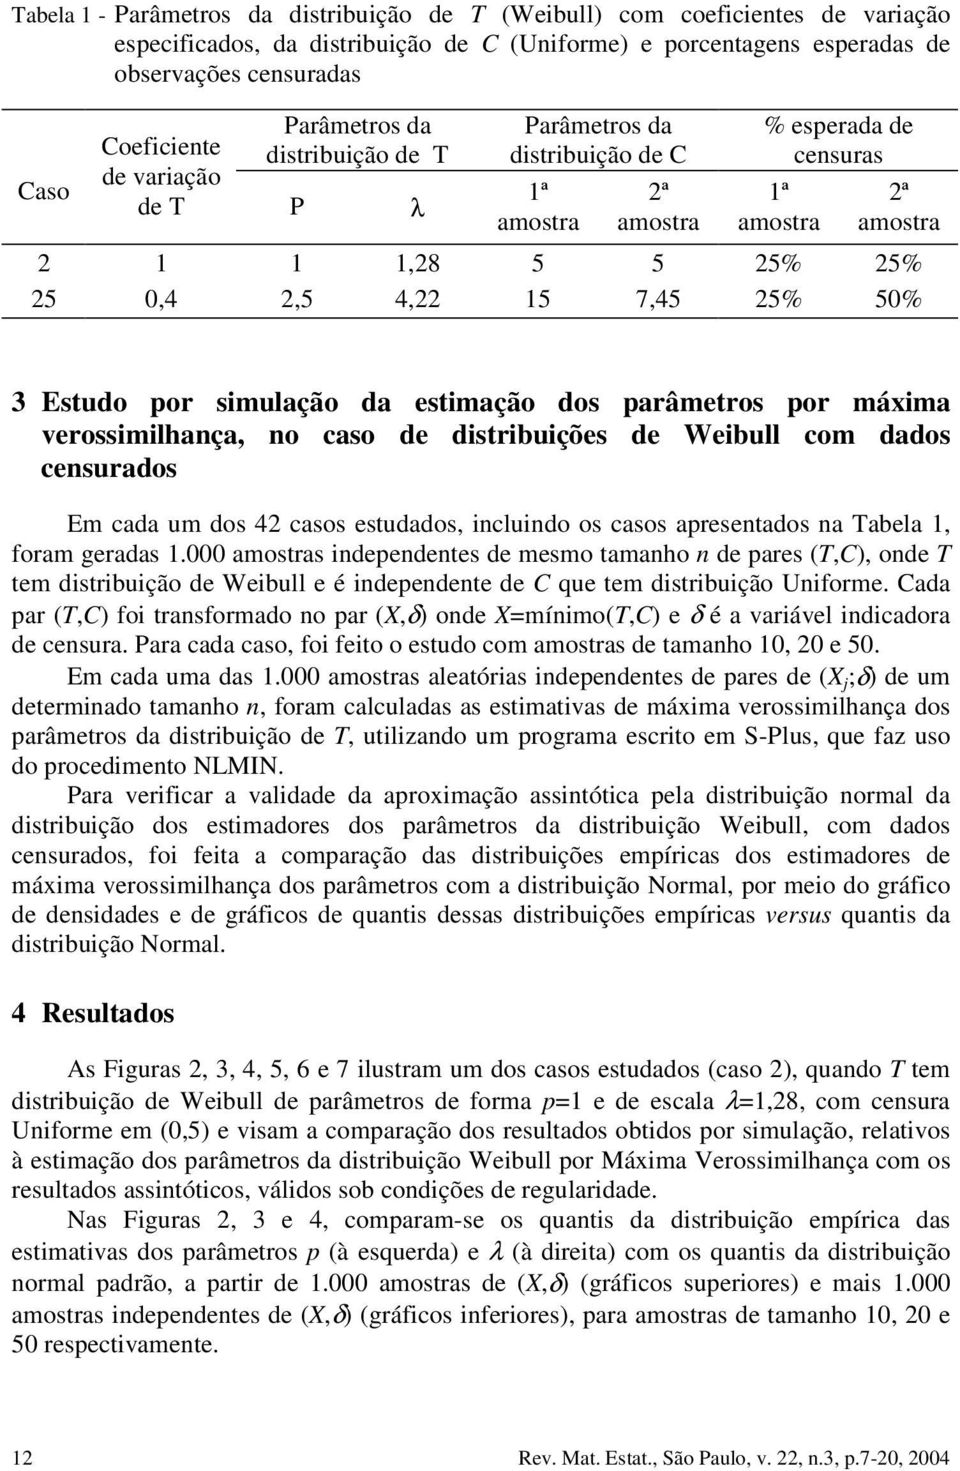 simulação da estimação dos arâmetros or máxima verossimilhaça, o caso de distribuições de Weibull com dados cesurados Em cada um dos 42 casos estudados, icluido os casos aresetados a Tabela, foram